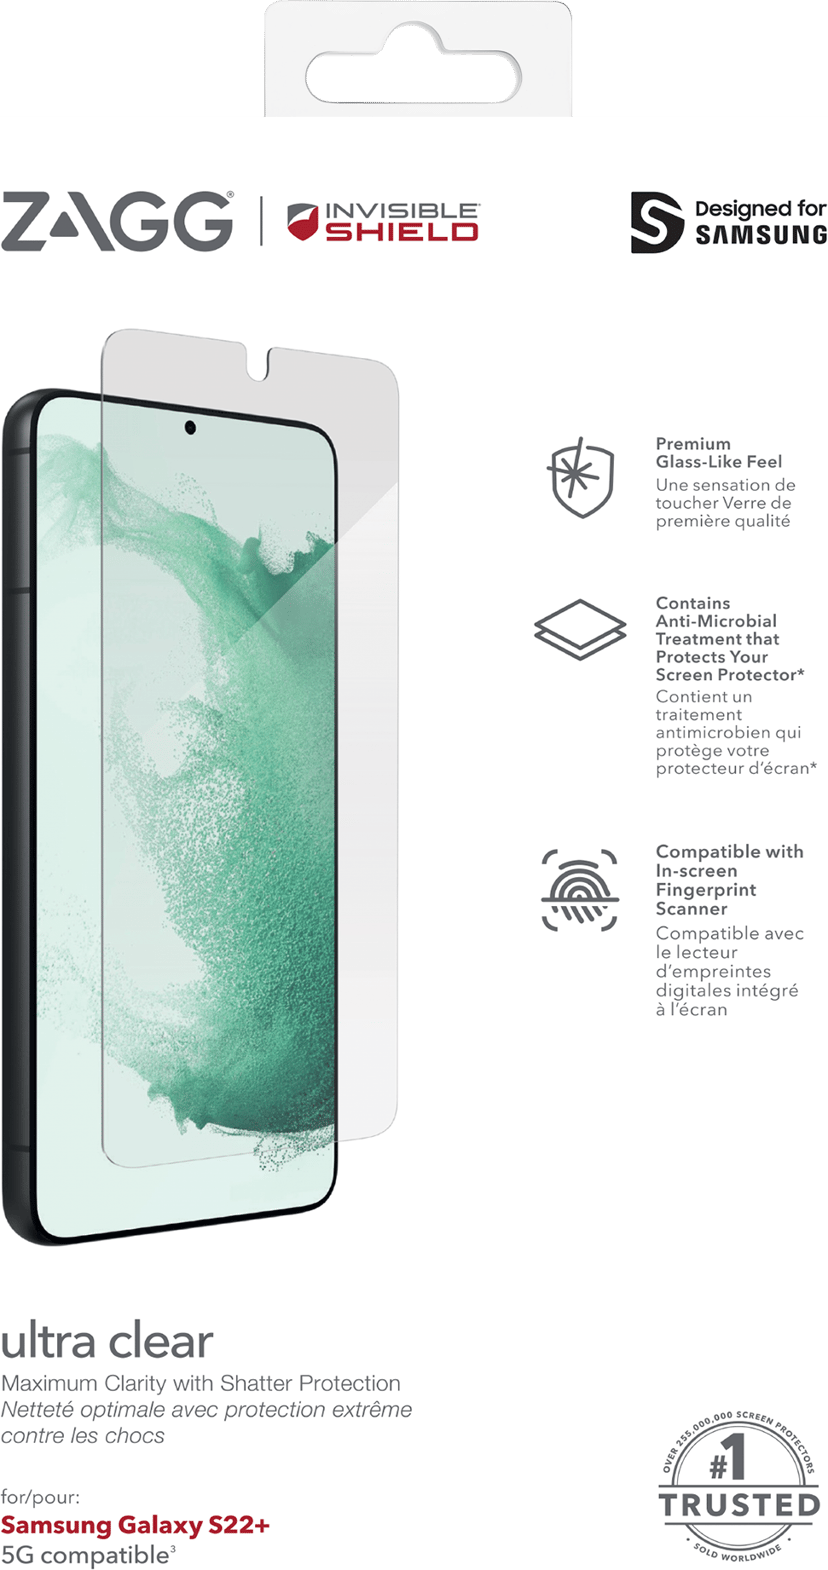 Zagg InvisibleShield Ultra Clear+ - Näytön suojus tuotteelle matkapuhelin - self healing malleihin Samsung Galaxy S22+